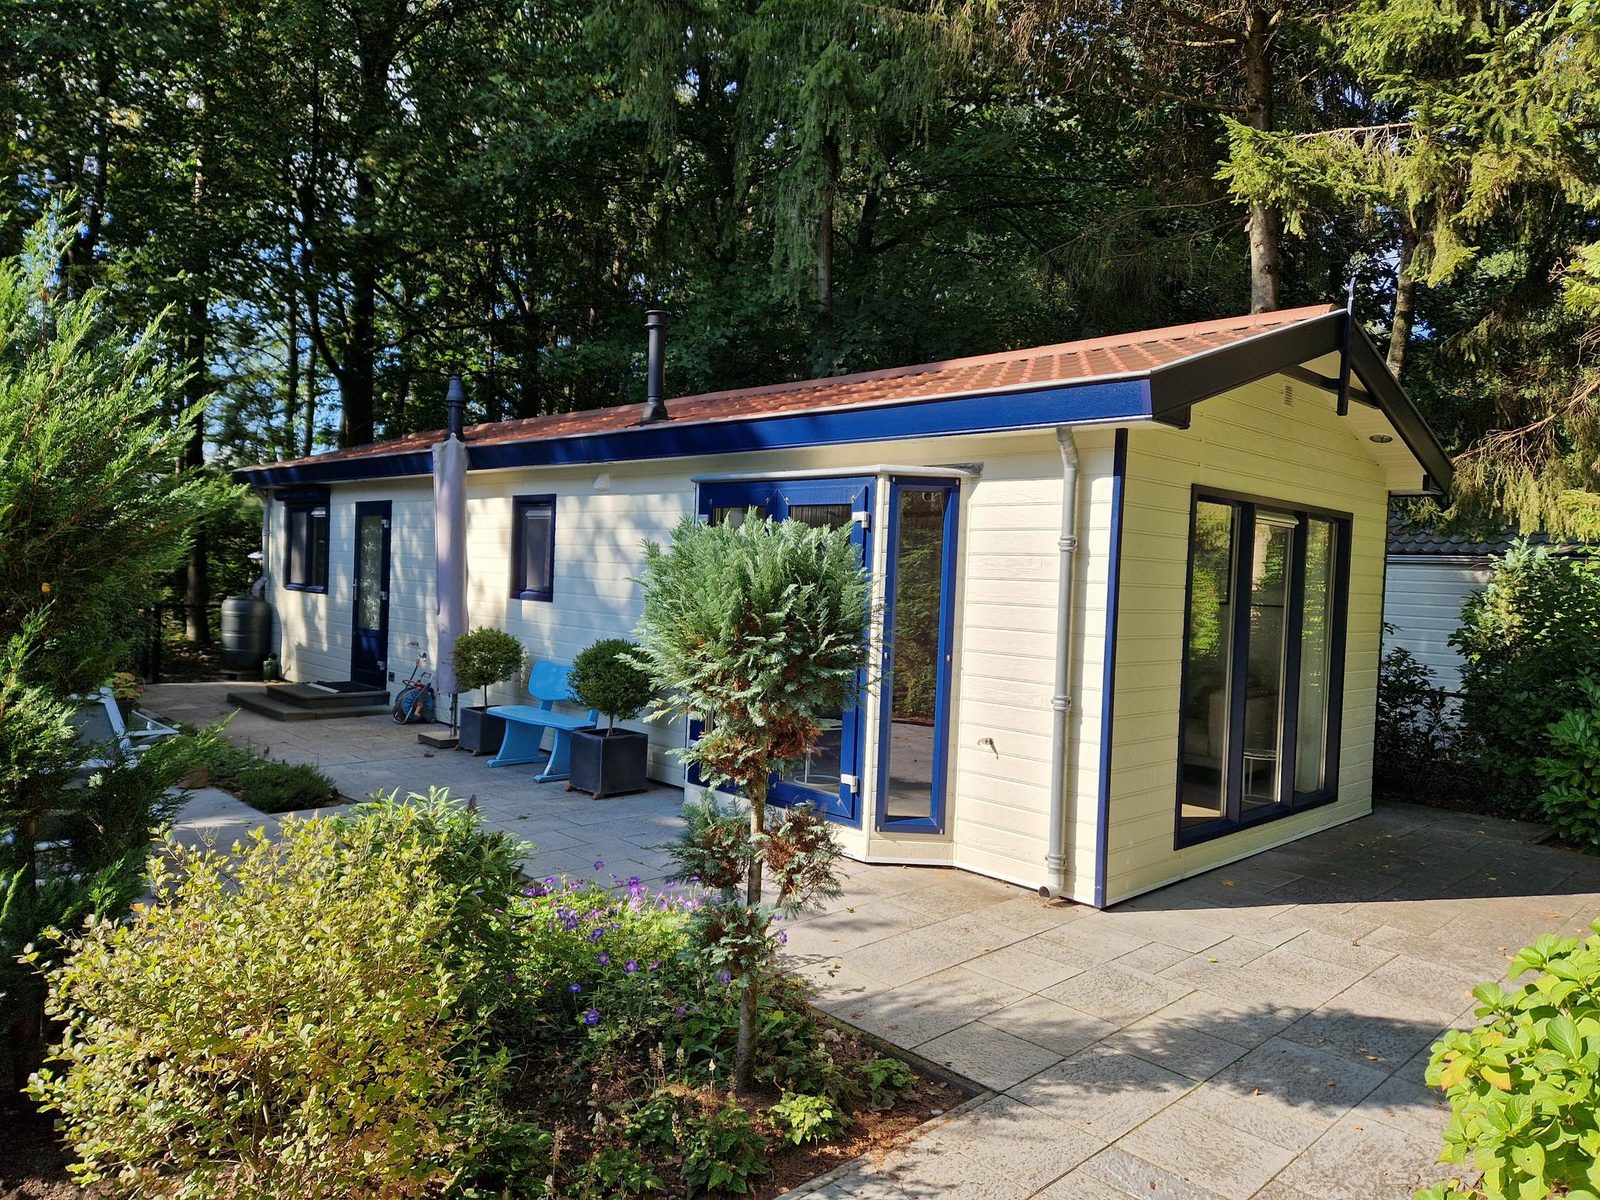 Vrijstaand vakantiehuis voor 4 personen op De Veldkamp in Epe Top Merken Winkel